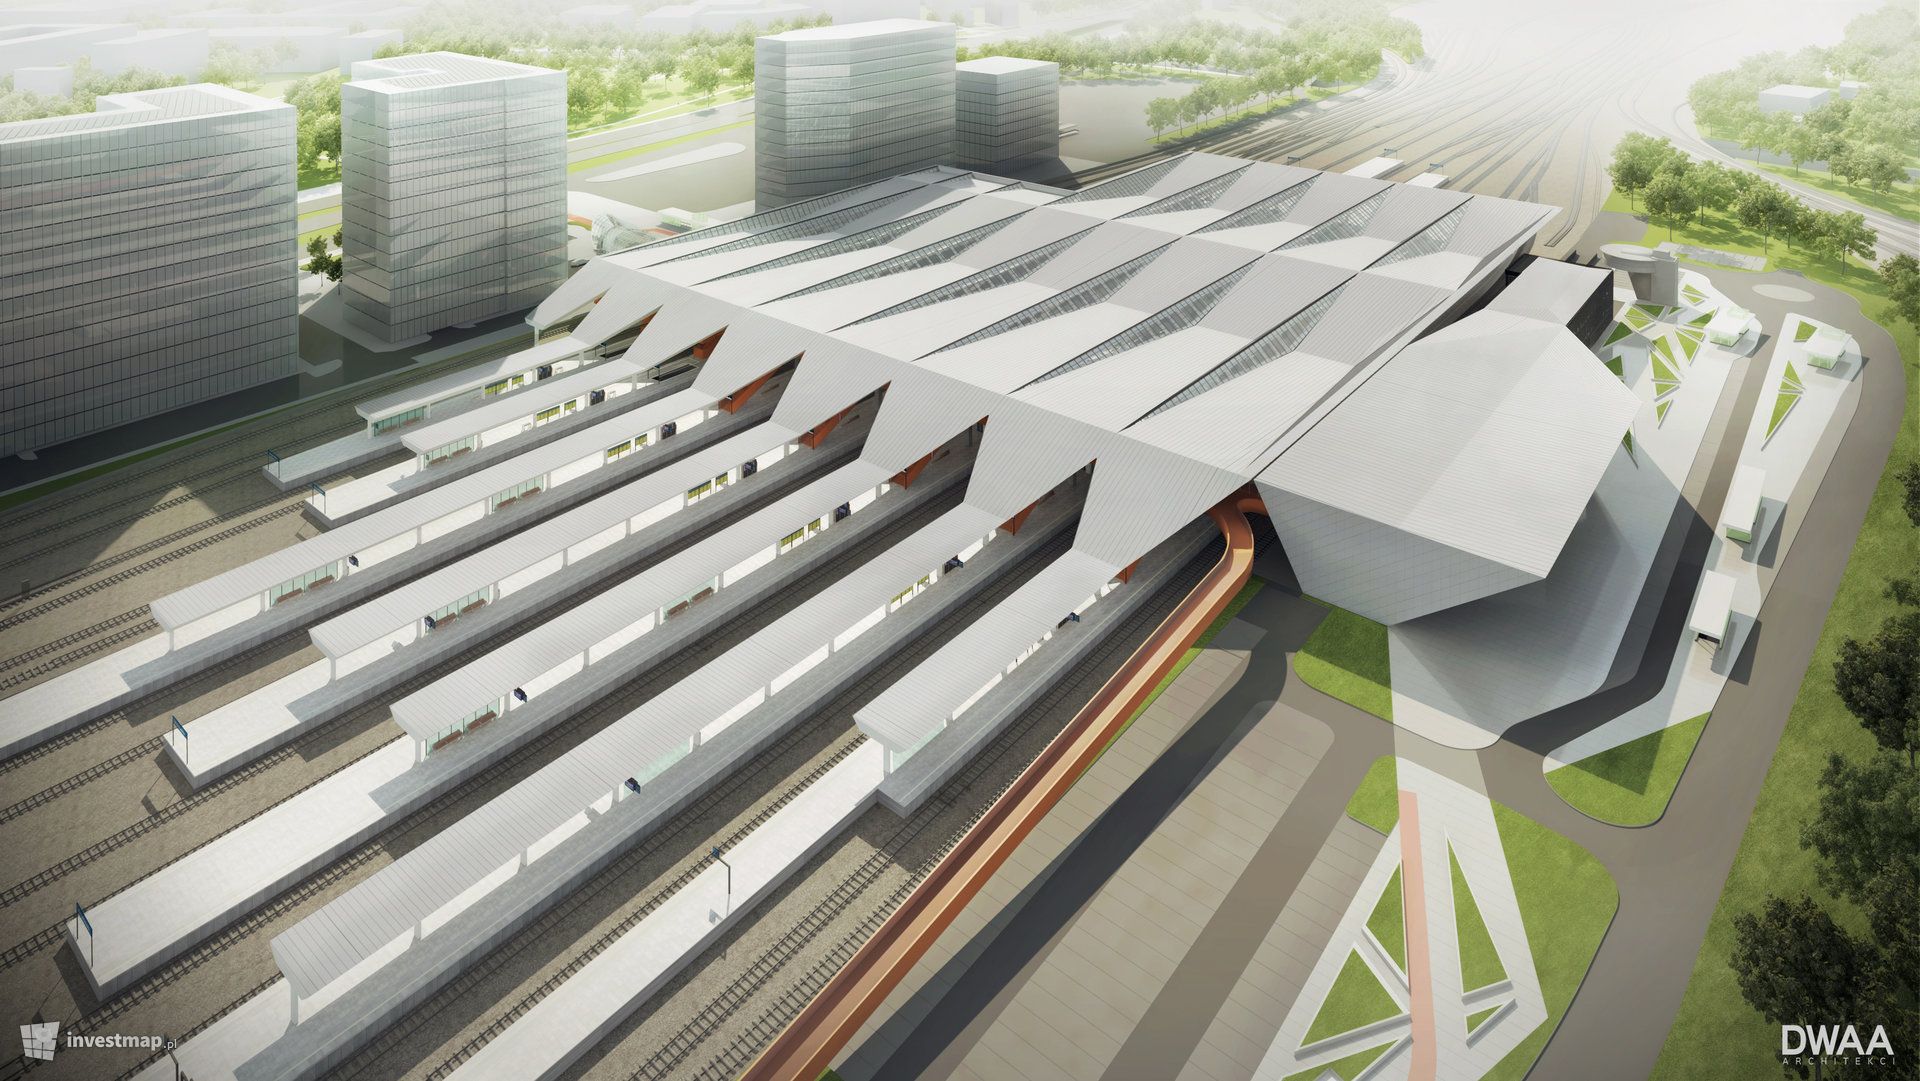 Budowa nowego dworca Warszawa Zachodnia będzie droższa i potrwa znacznie dłużej 